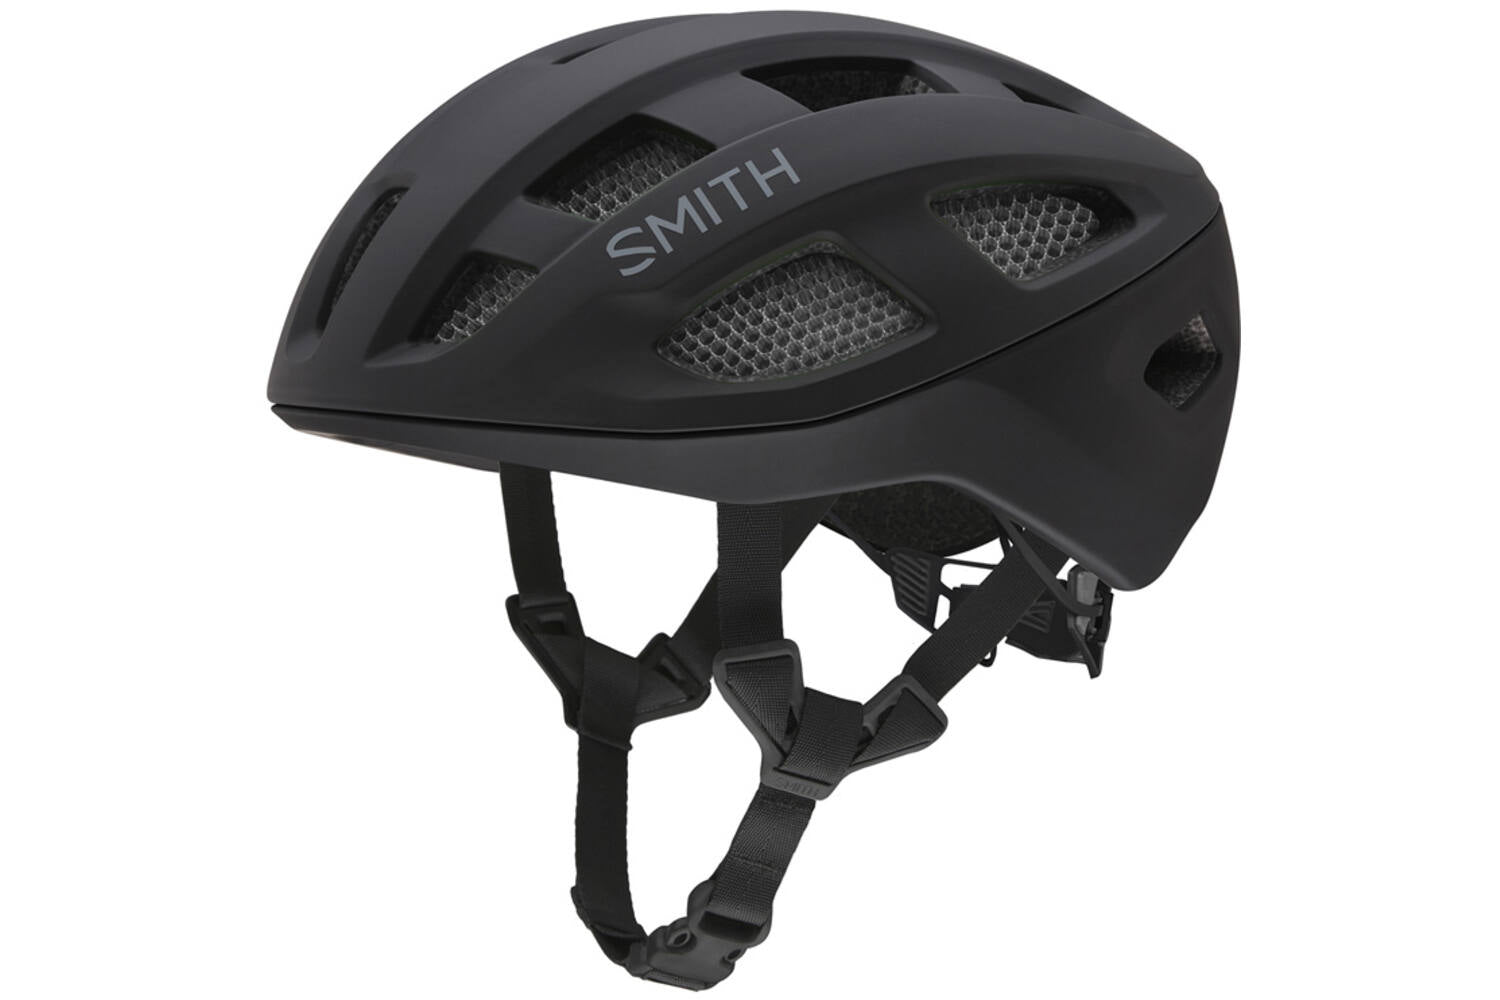 Smith Triad helm mips matte black 51-55 s